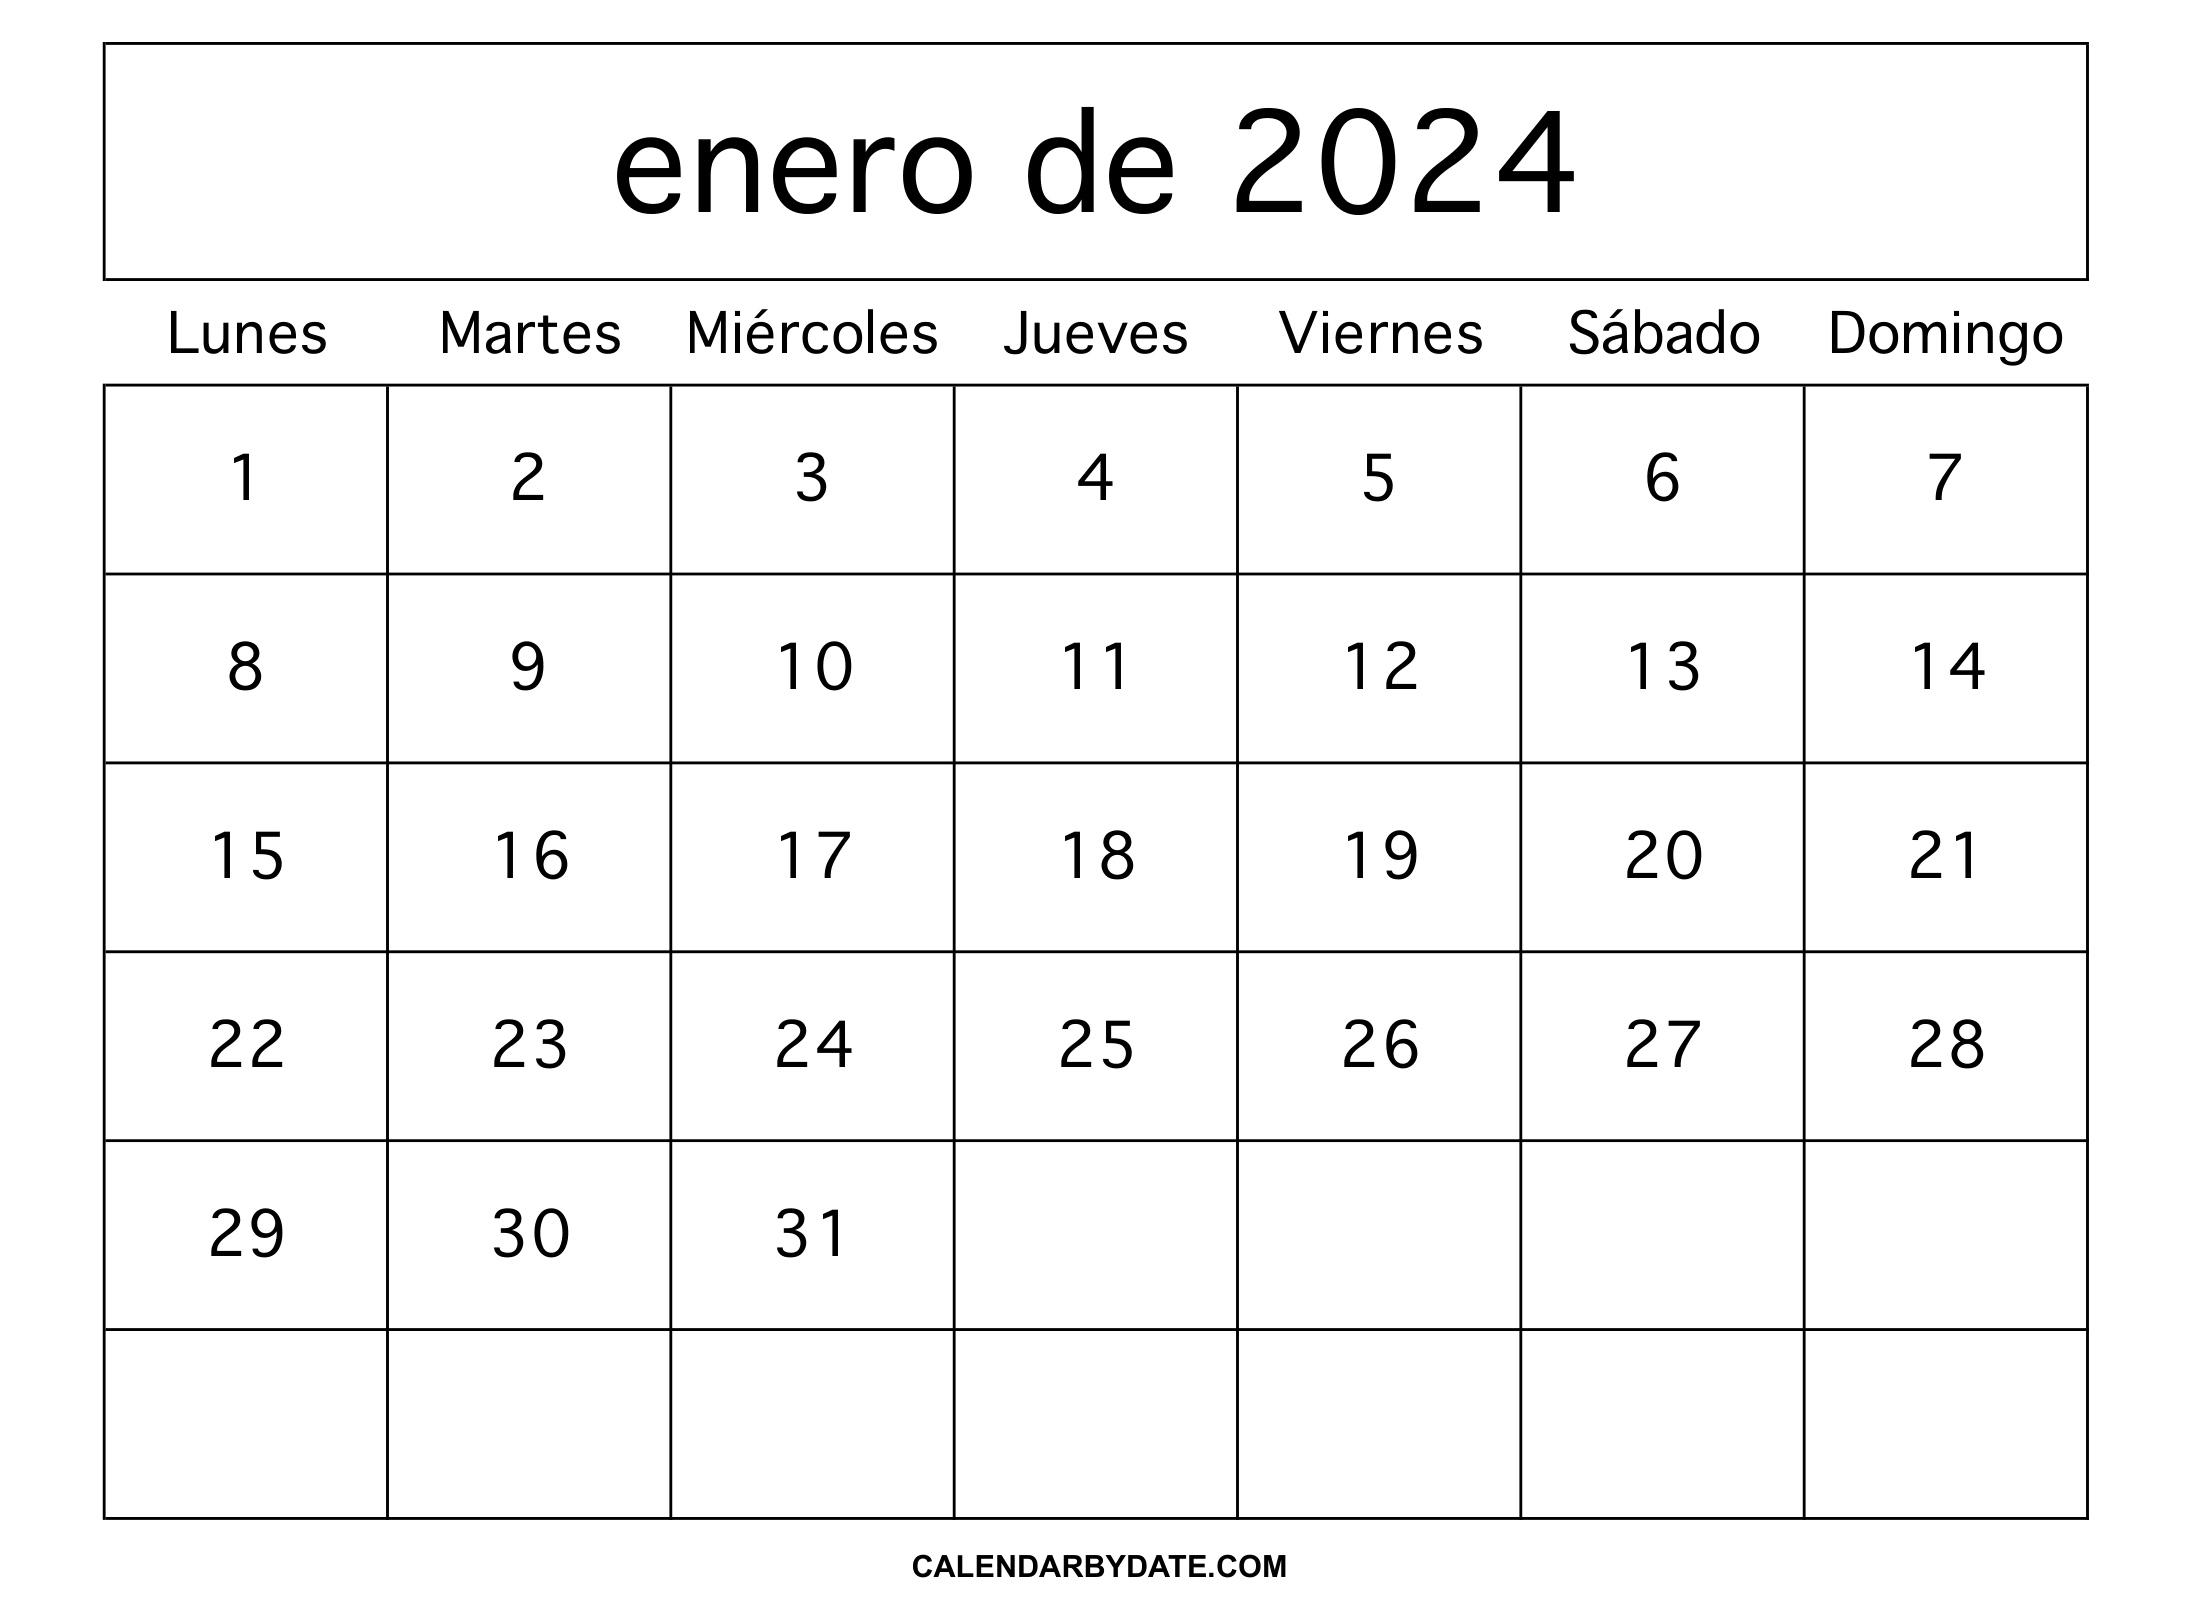 Calendario enero 2024 argentina